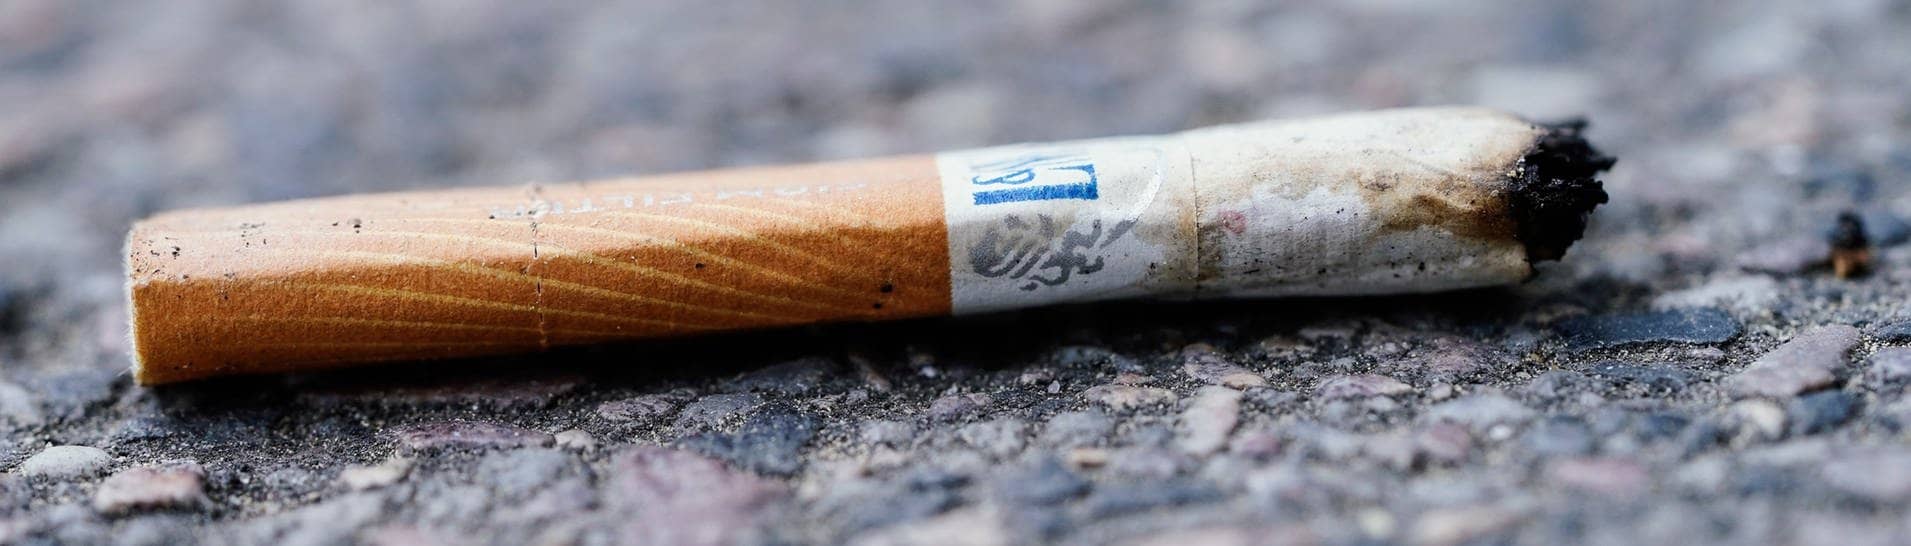 Eine Zigarette liegt auf dem Boden